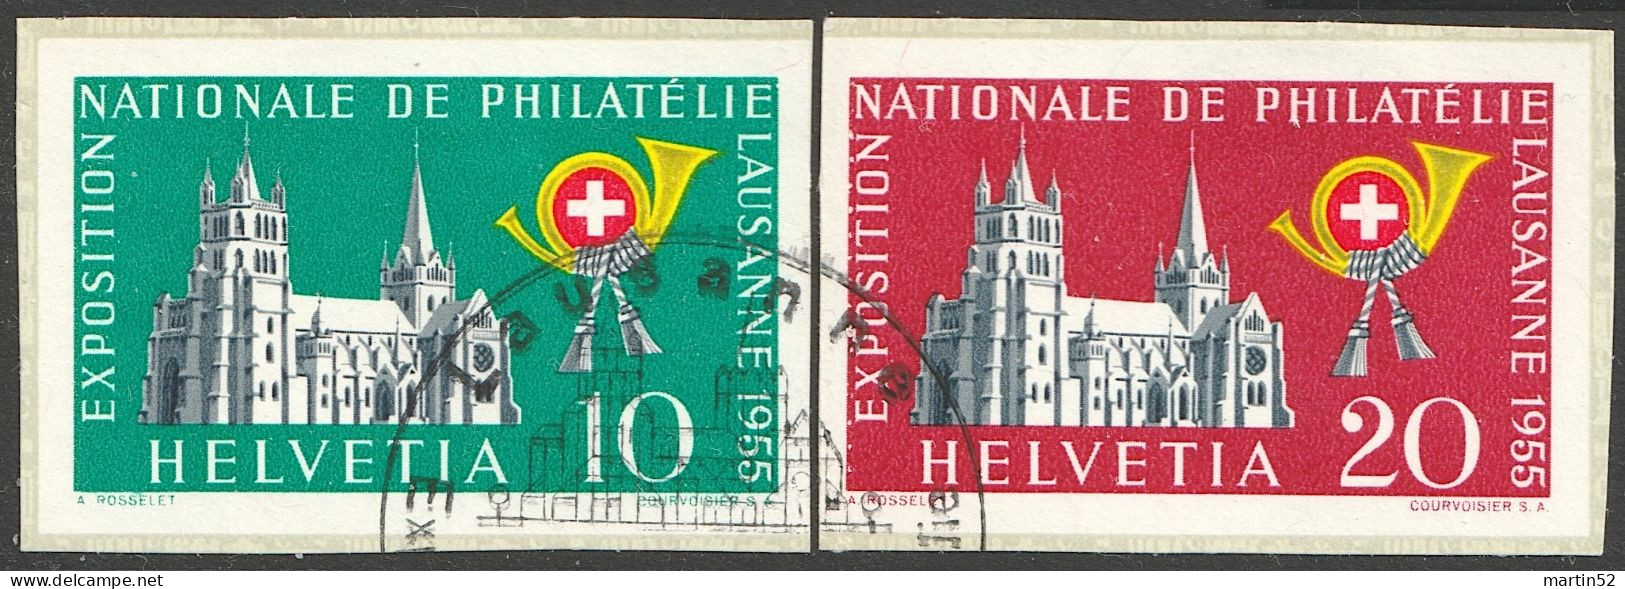 Schweiz Suisse 1955: "LAUSANNE" Zu WIII 33+34 Mi 611+612 (aus Block 15) Yv Du BF 15 Mit EXPO-⊙ Lausanne (Zu CHF 80.00) - Blocks & Sheetlets & Panes